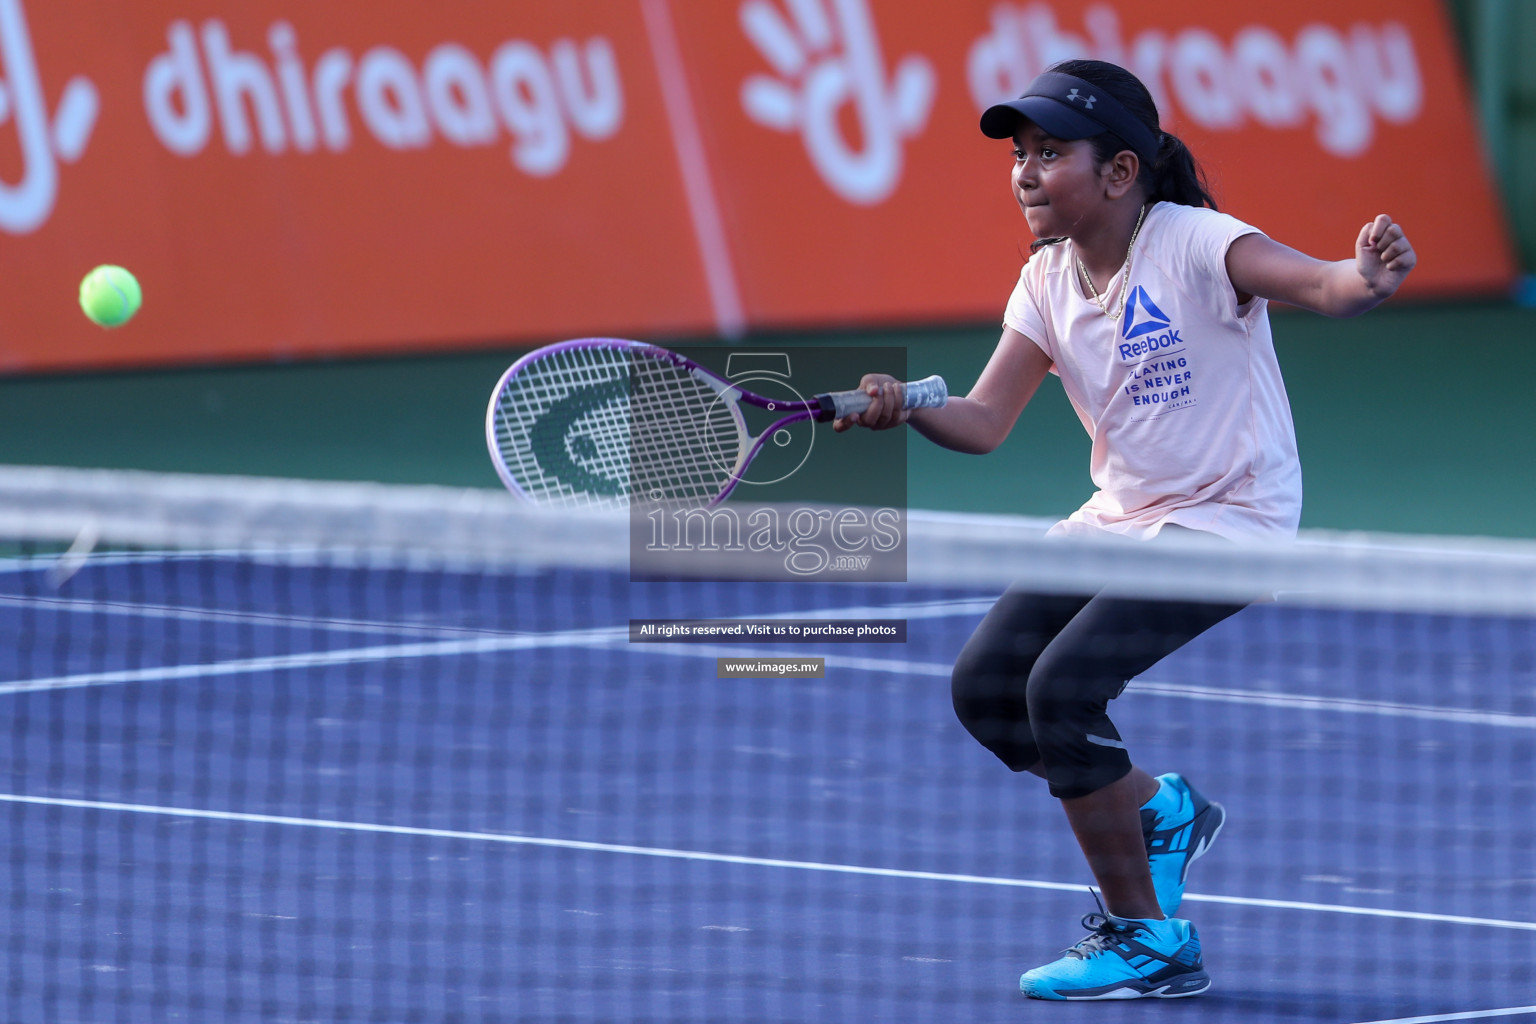 Maldives Tennis Open 2019, 9th Sep 2019, Male, Photos: Suadh Abdul Sattar/ Images.mv